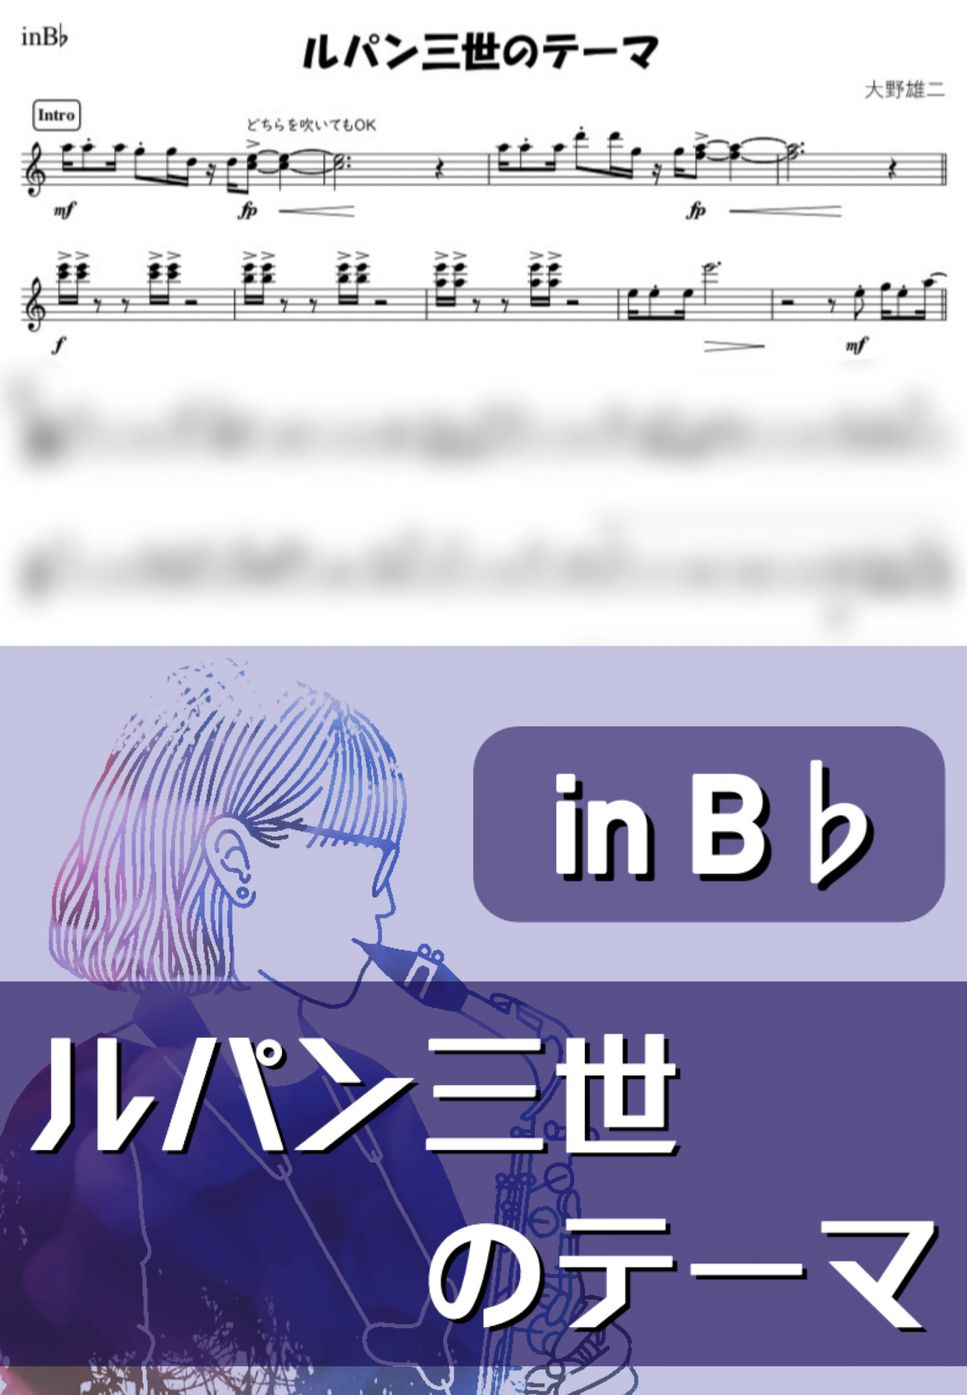 大野雄二 - ルパン三世のテーマ (B♭) by kanamusic